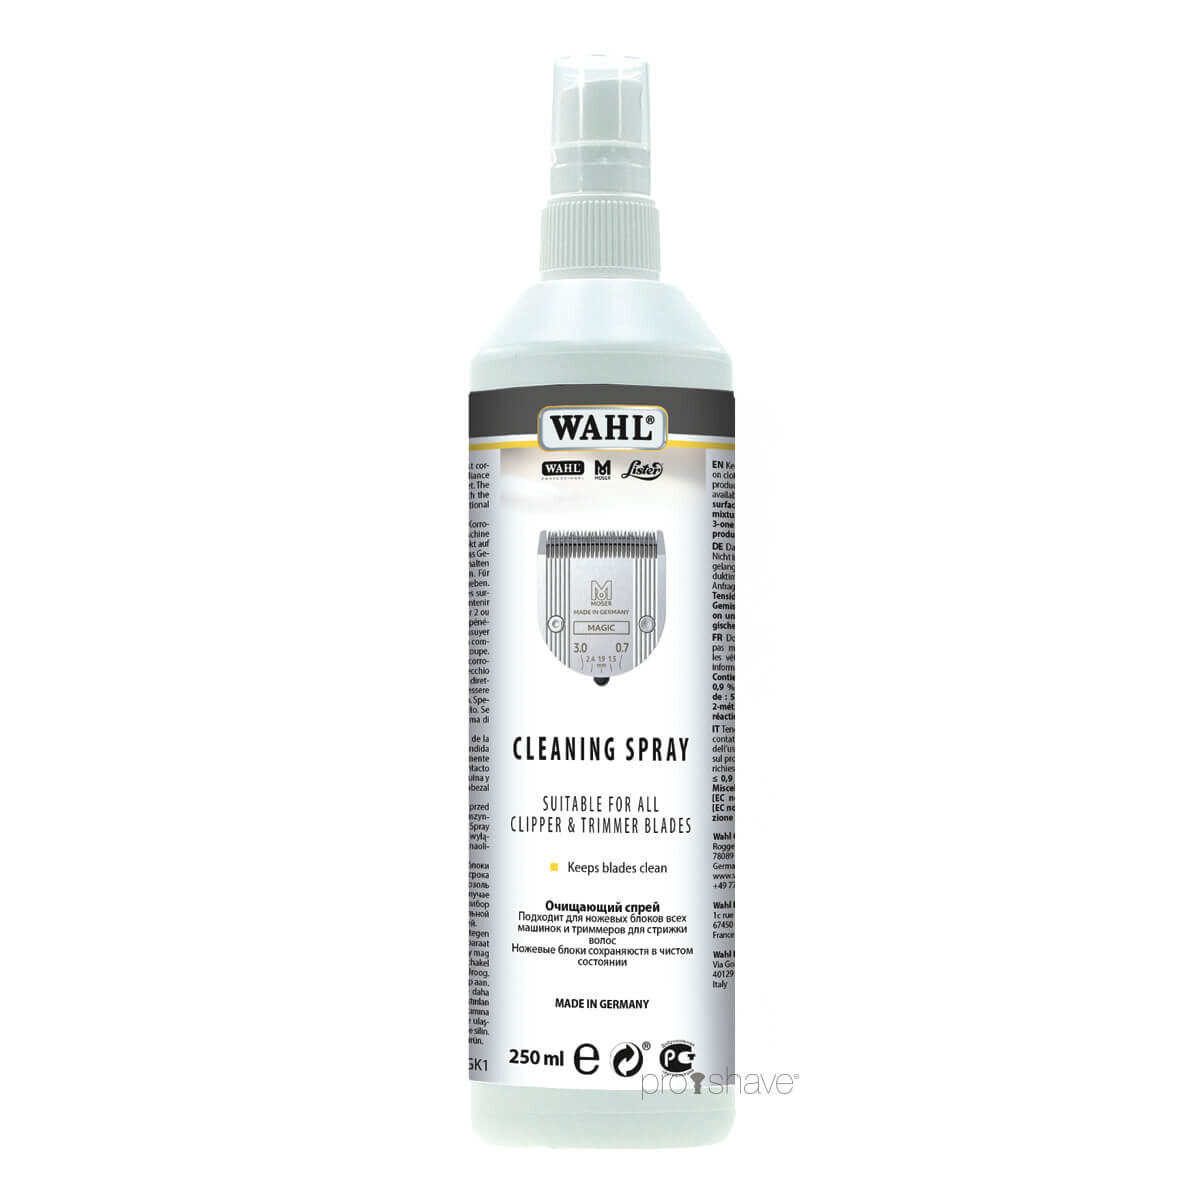 Billede af Wahl Professional Cleaning Spray, 250 ml.